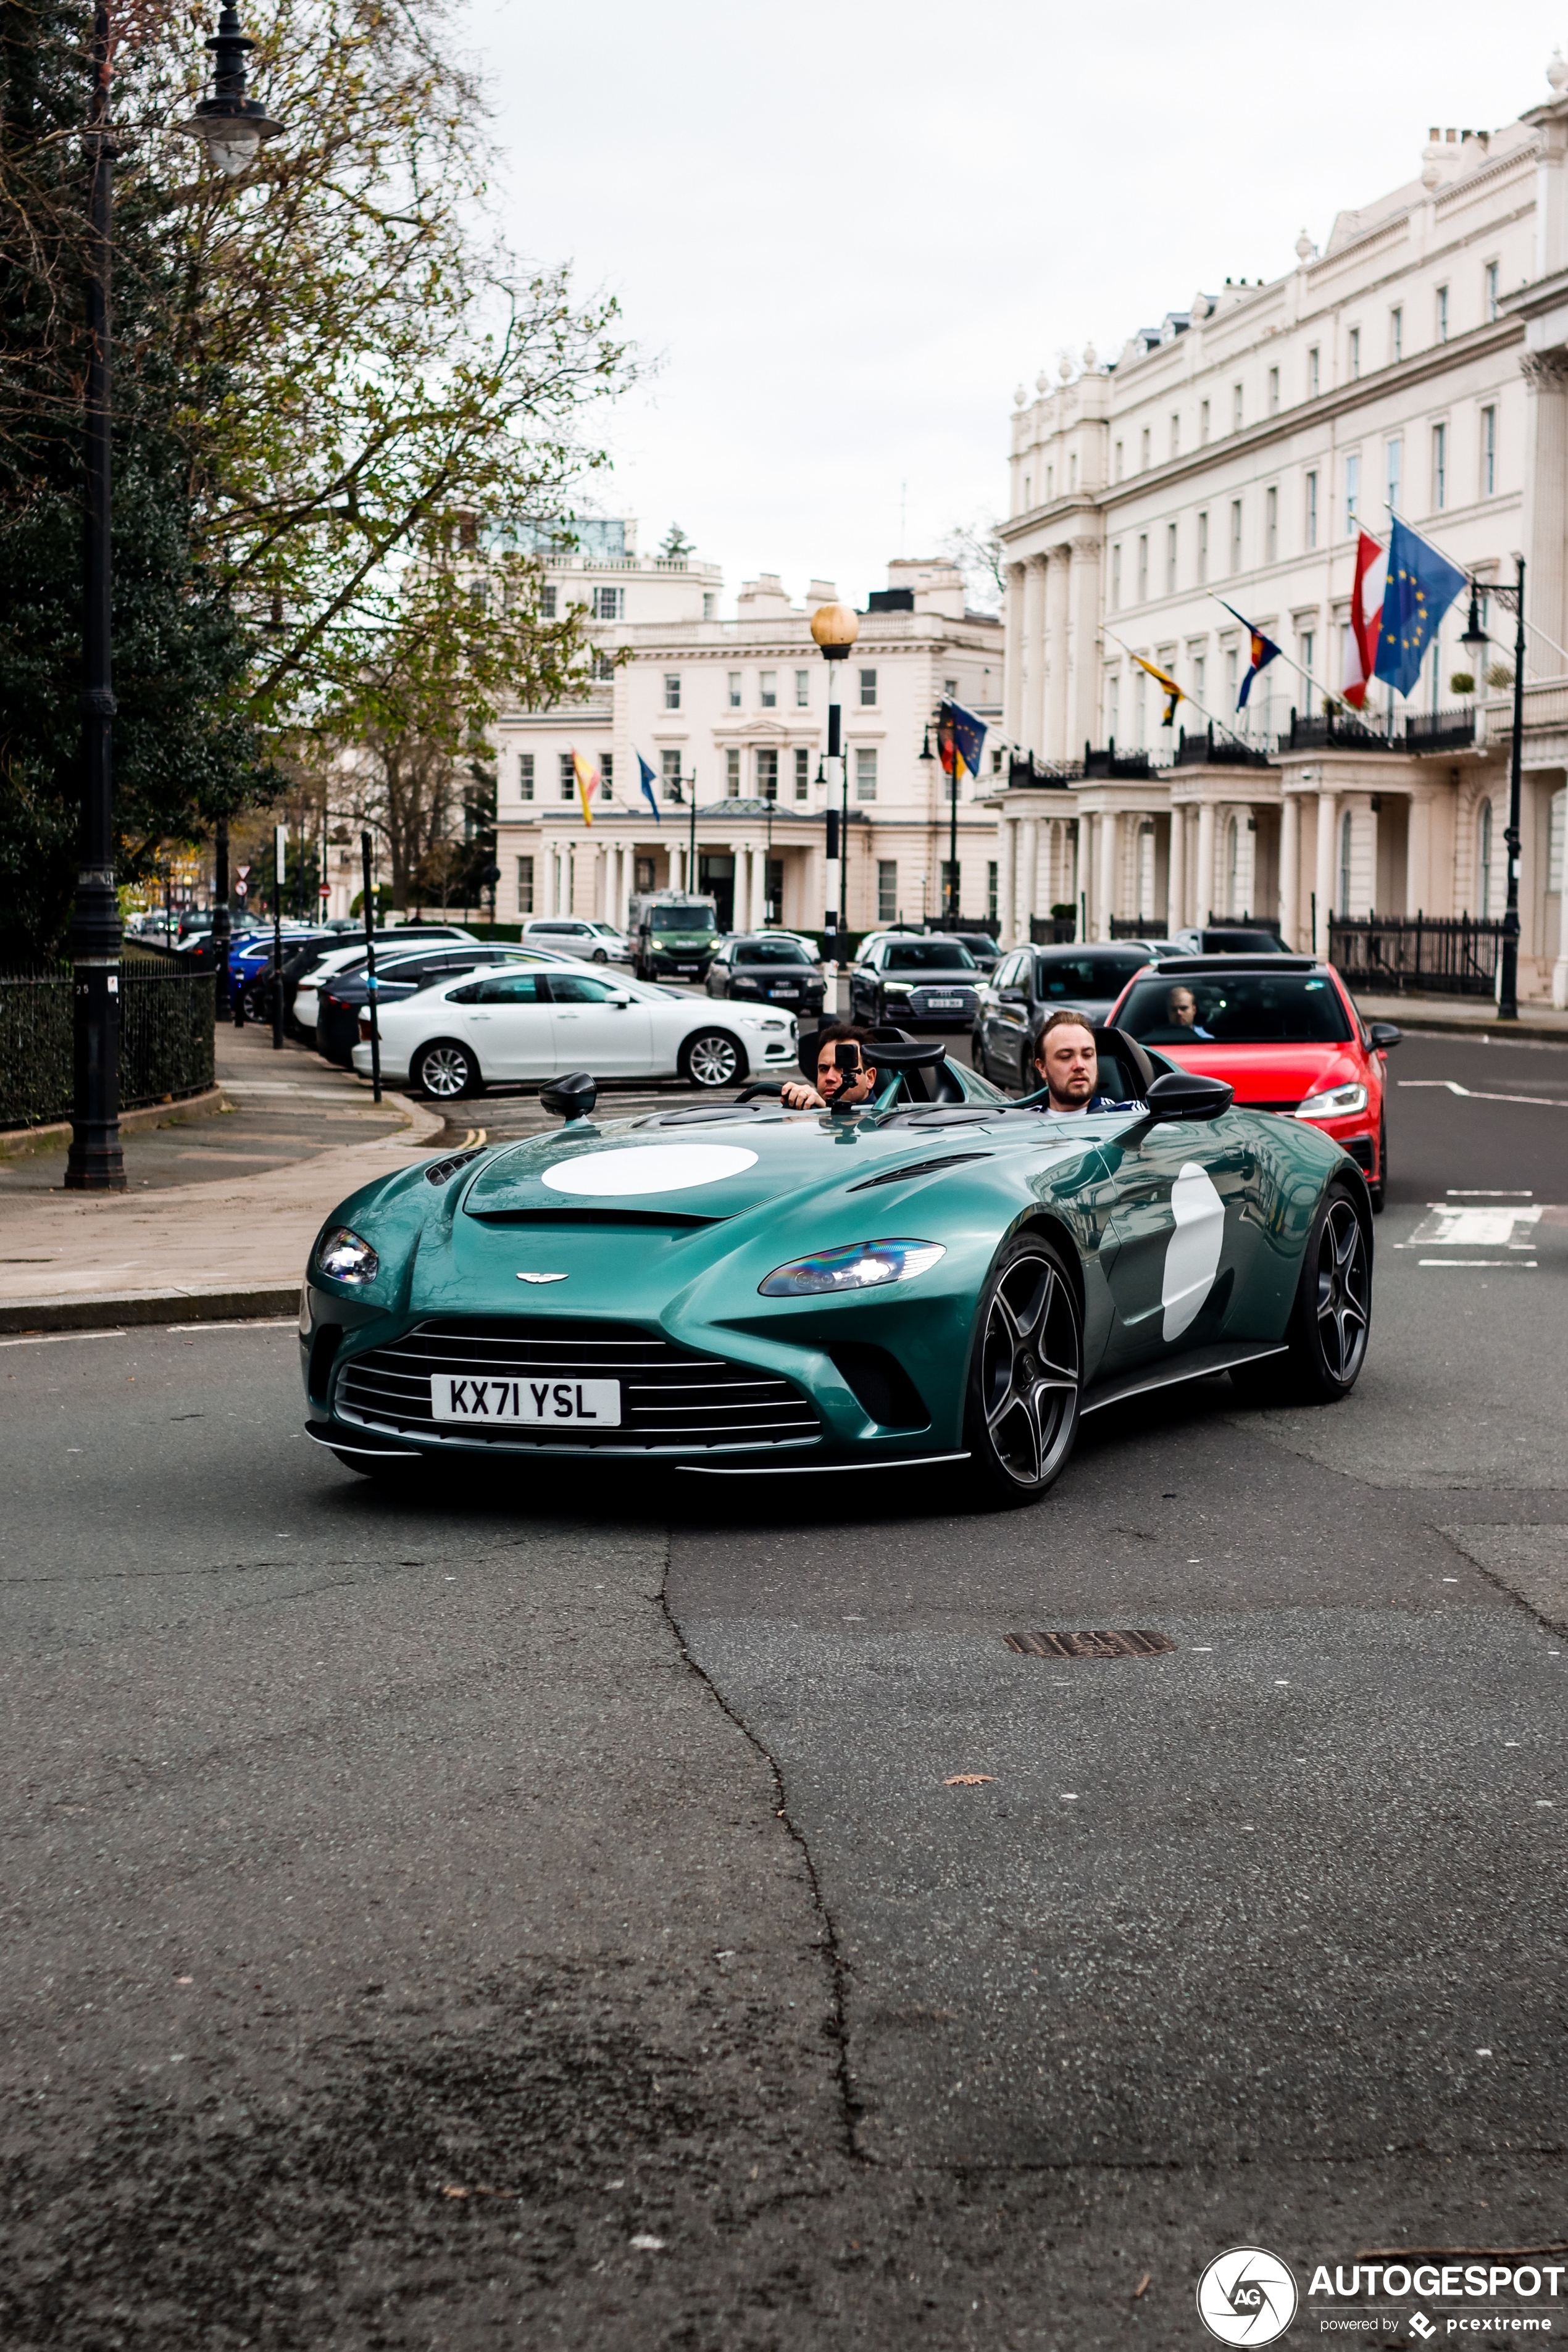 Londen levert weer een nieuwe Aston Martin V12 Speedster